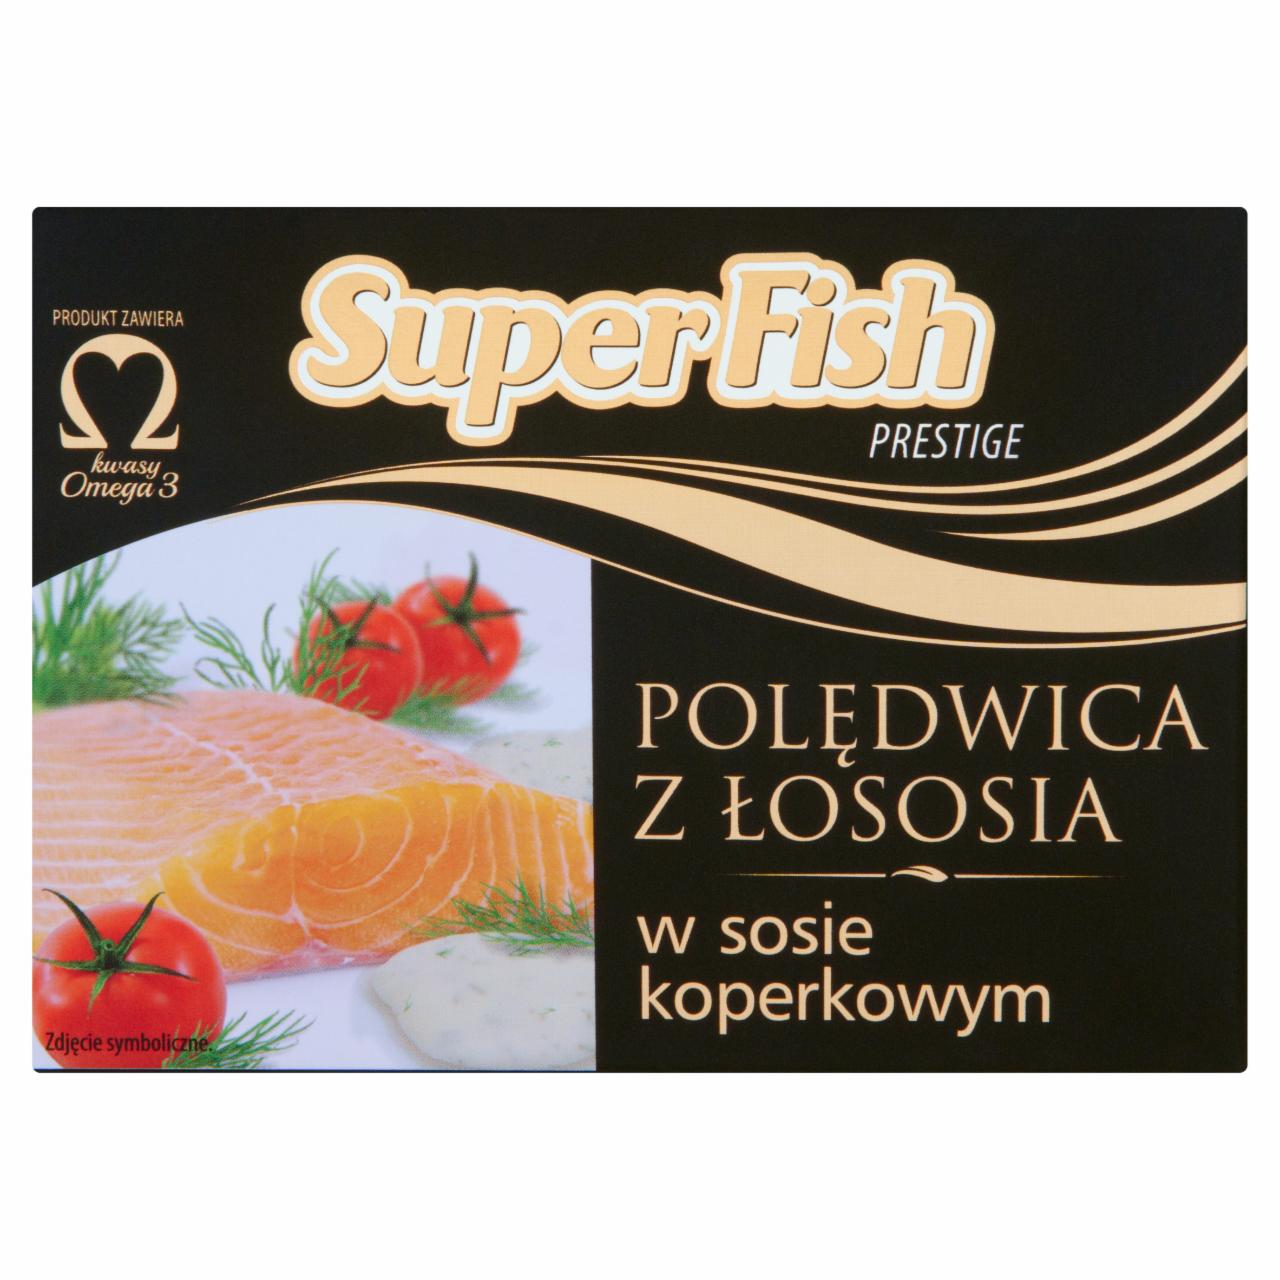 Zdjęcia - SuperFish Prestige Polędwica z łososia w sosie koperkowym 110 g